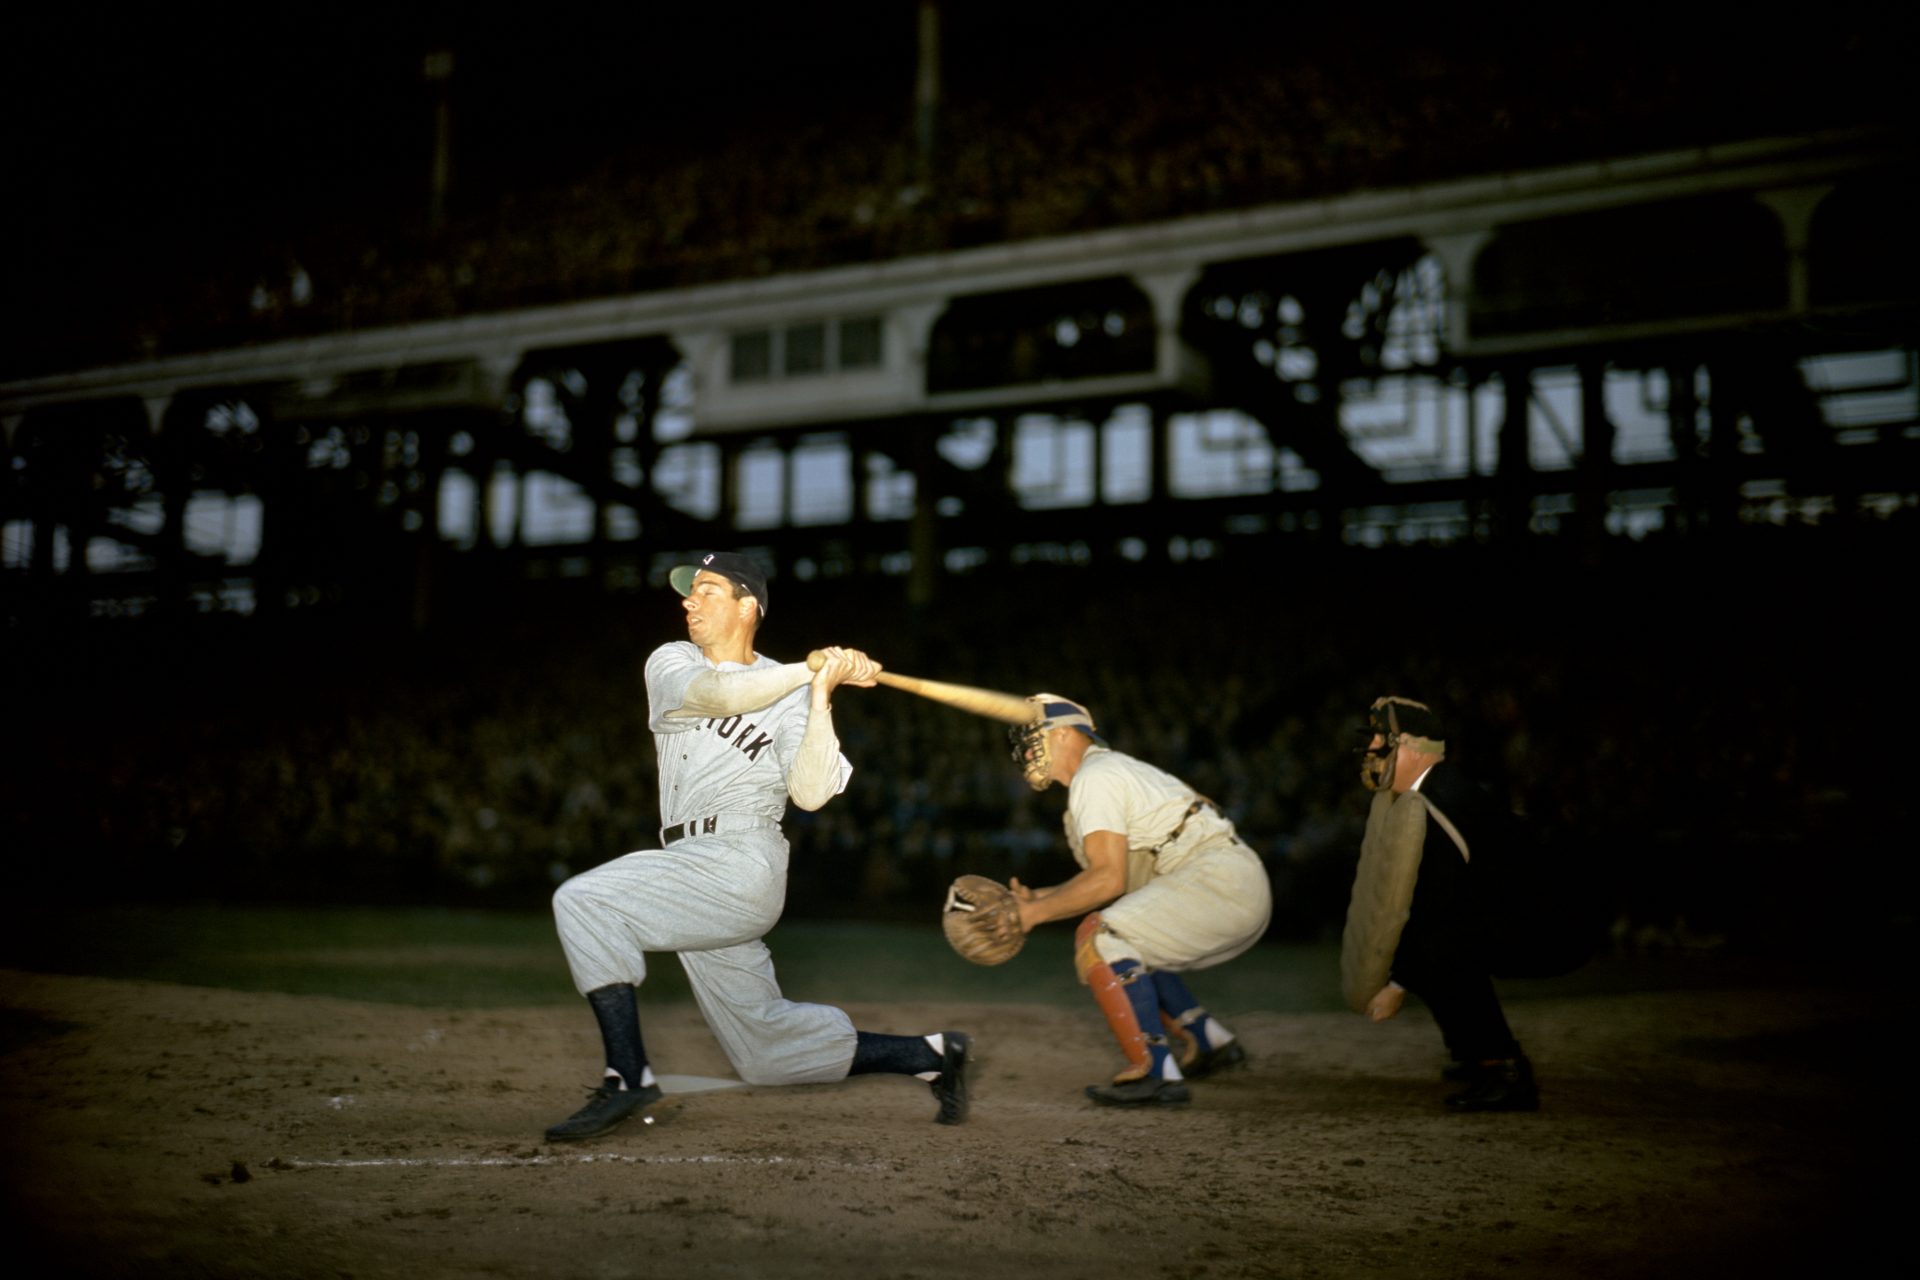 Joe DiMaggio: Die tragische Geschichte hinter einer der größten Baseballlegenden